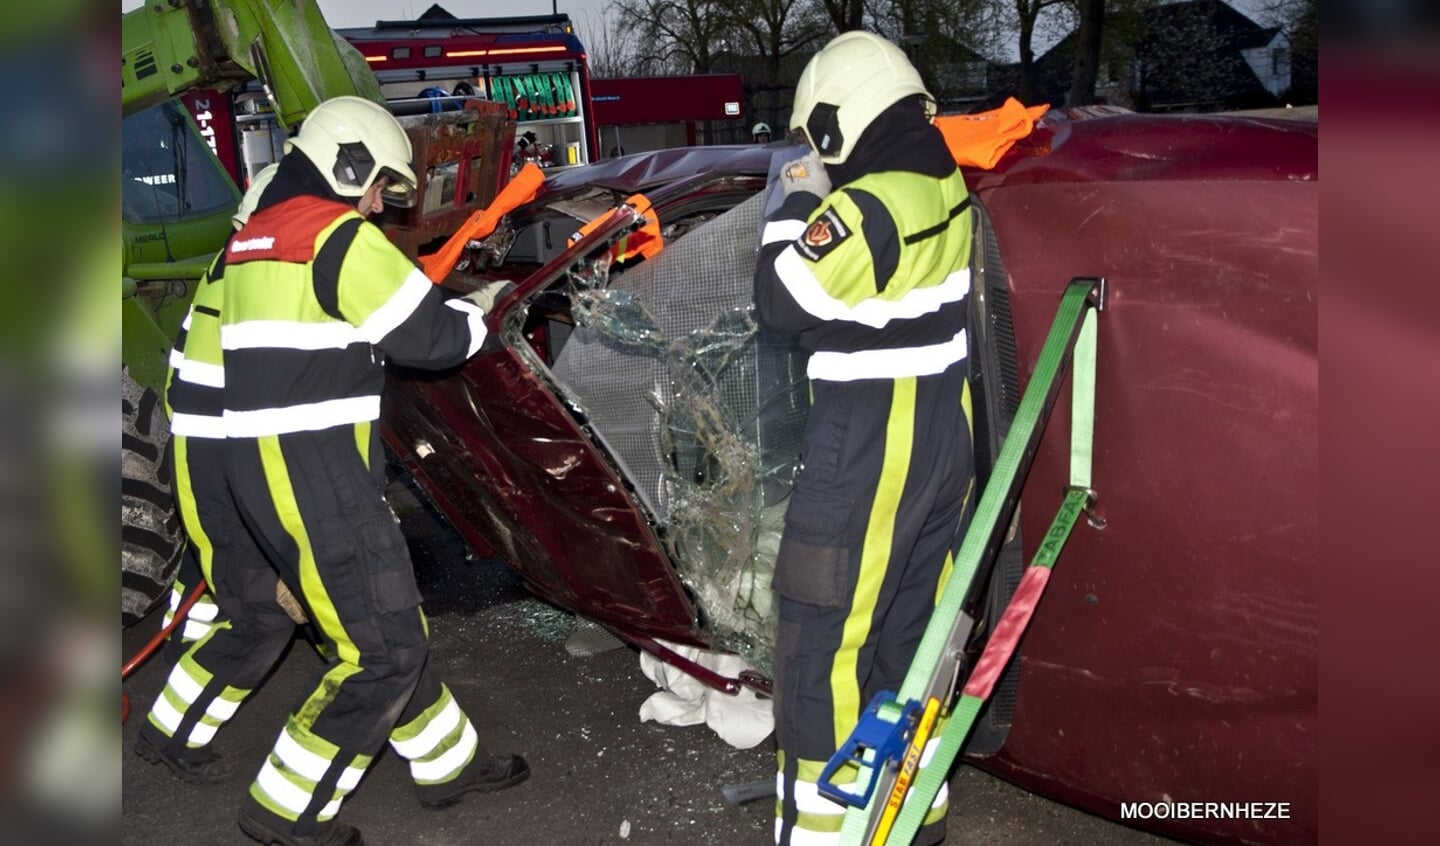 Heesch - OEFENING Brandweer bevrijdt slachtoffert uit de auto 